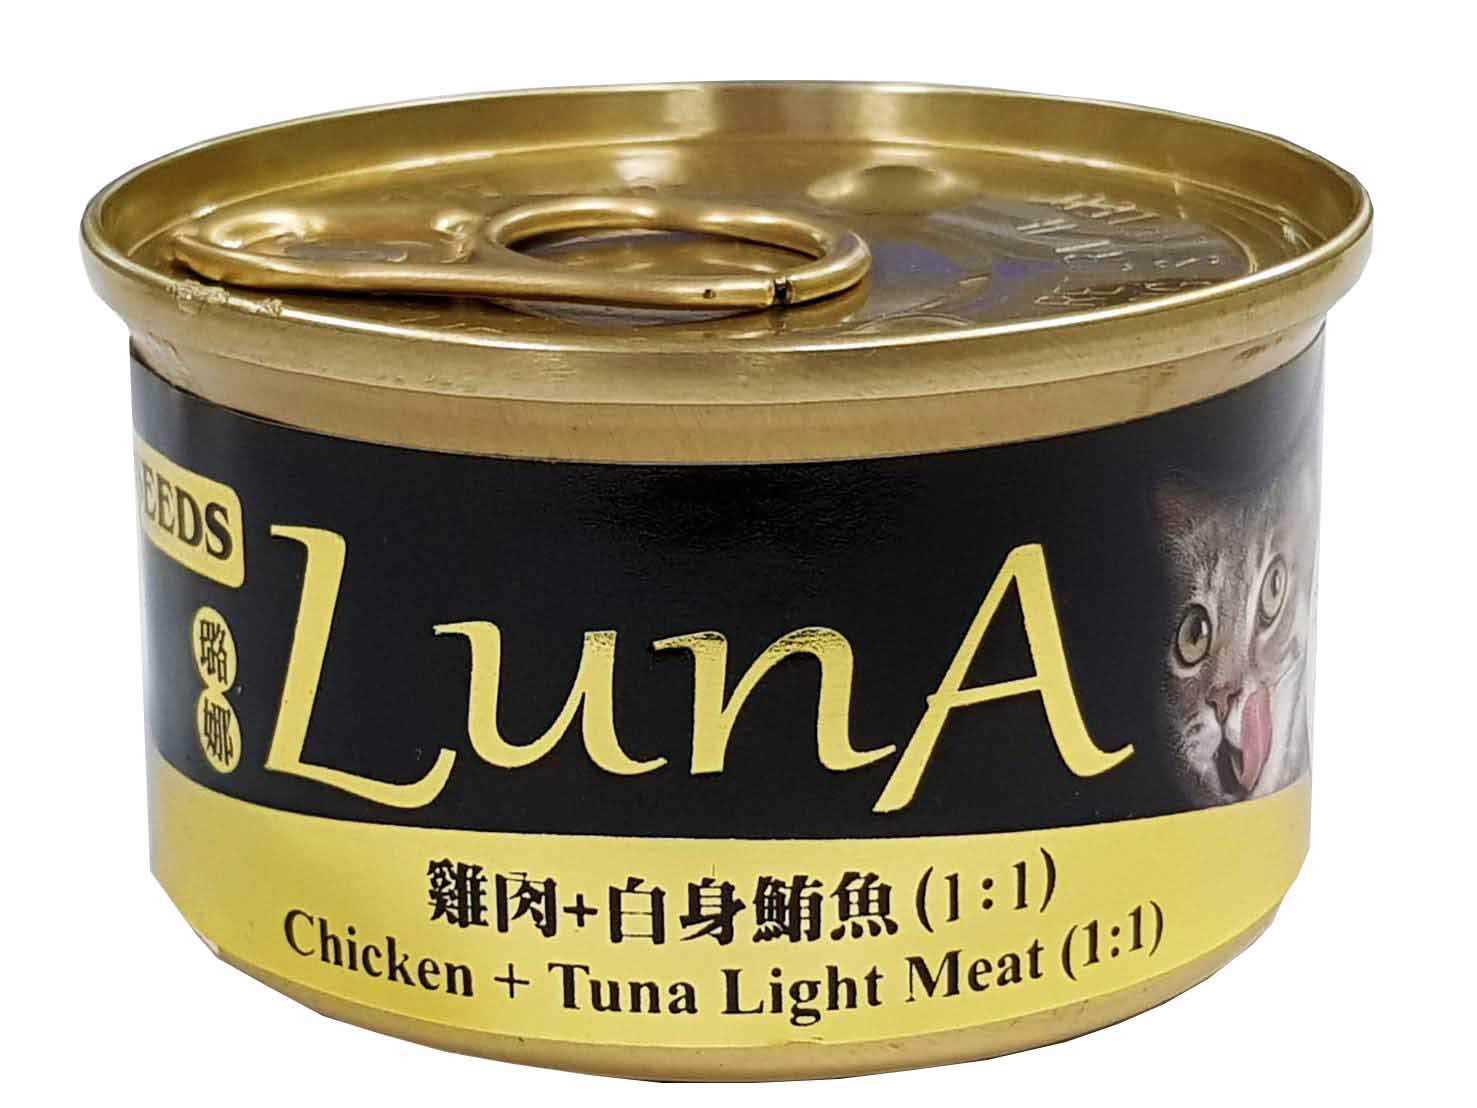 LunA璐娜愛貓機能餐罐(雞肉+白身鮪魚(1:1))
PX LunA85g(CK/TUNA)